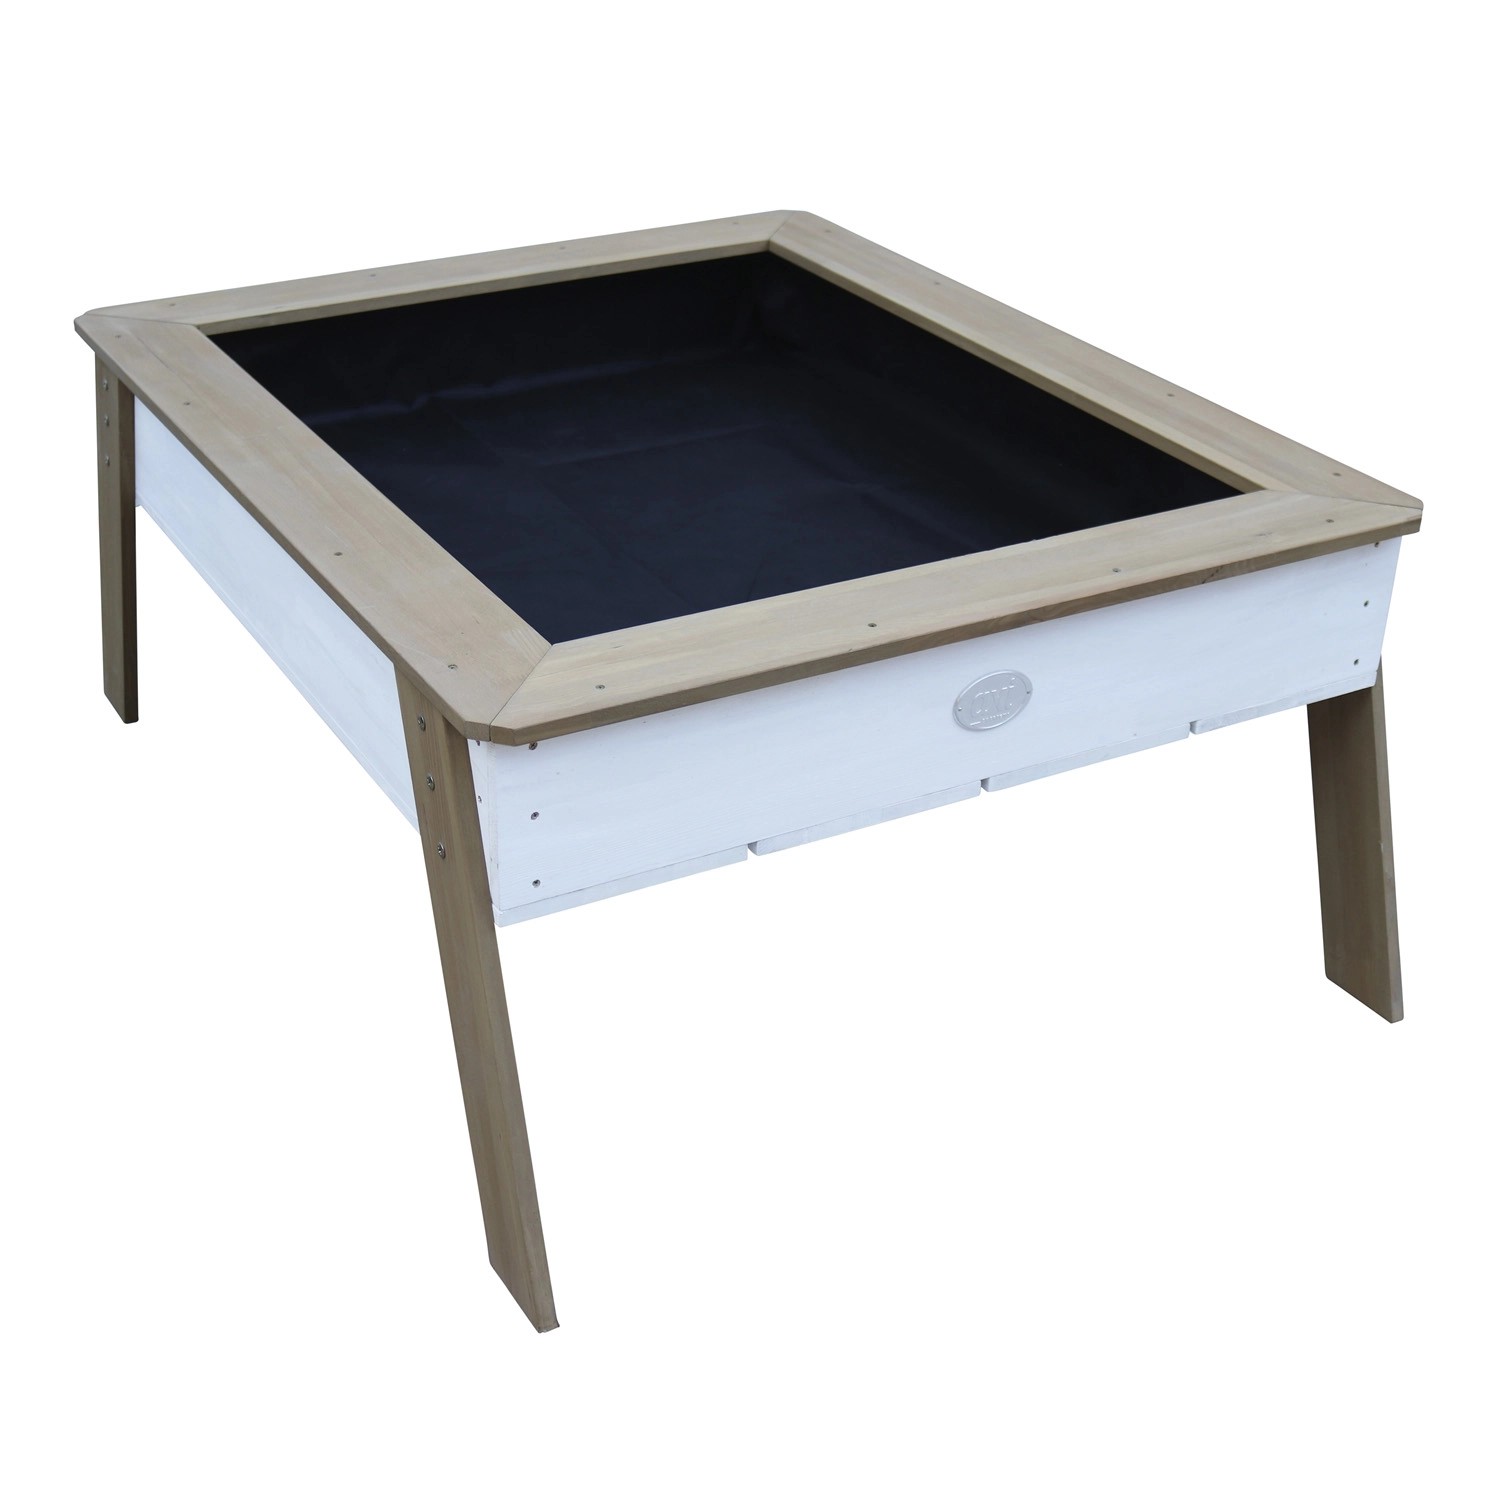 Axi Sandtisch mit Hochbeet Linda Braun Weiß 110 cm x 93,5 cm x 50 cm